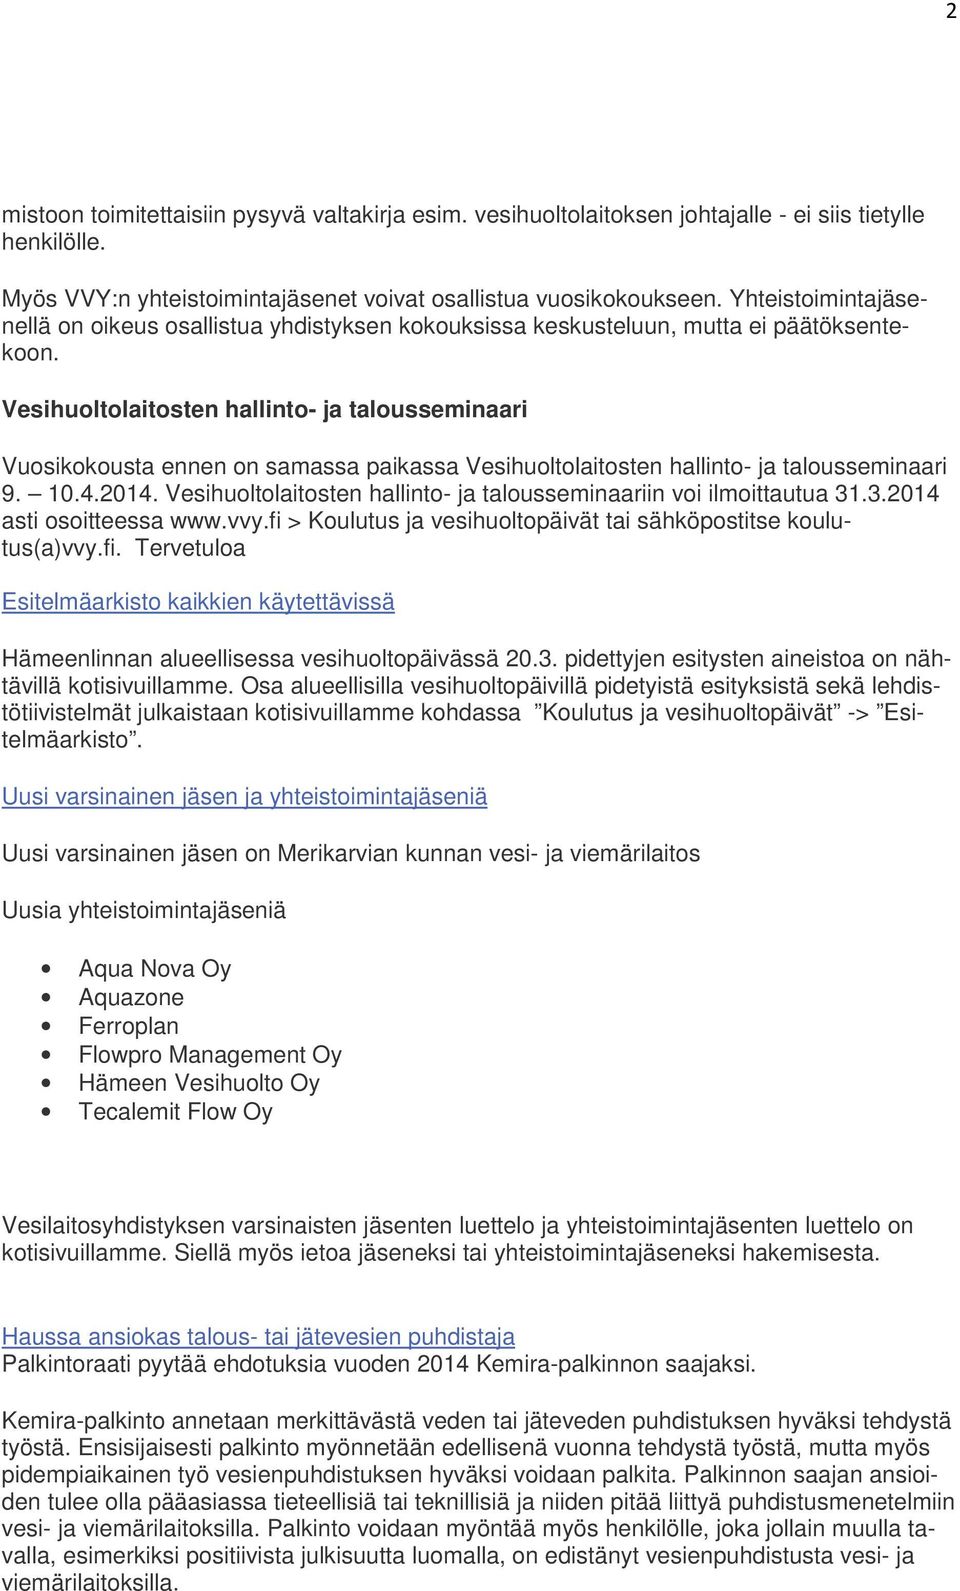 Vesihuoltolaitosten hallinto- ja talousseminaari Vuosikokousta ennen on samassa paikassa Vesihuoltolaitosten hallinto- ja talousseminaari 9. 10.4.2014.